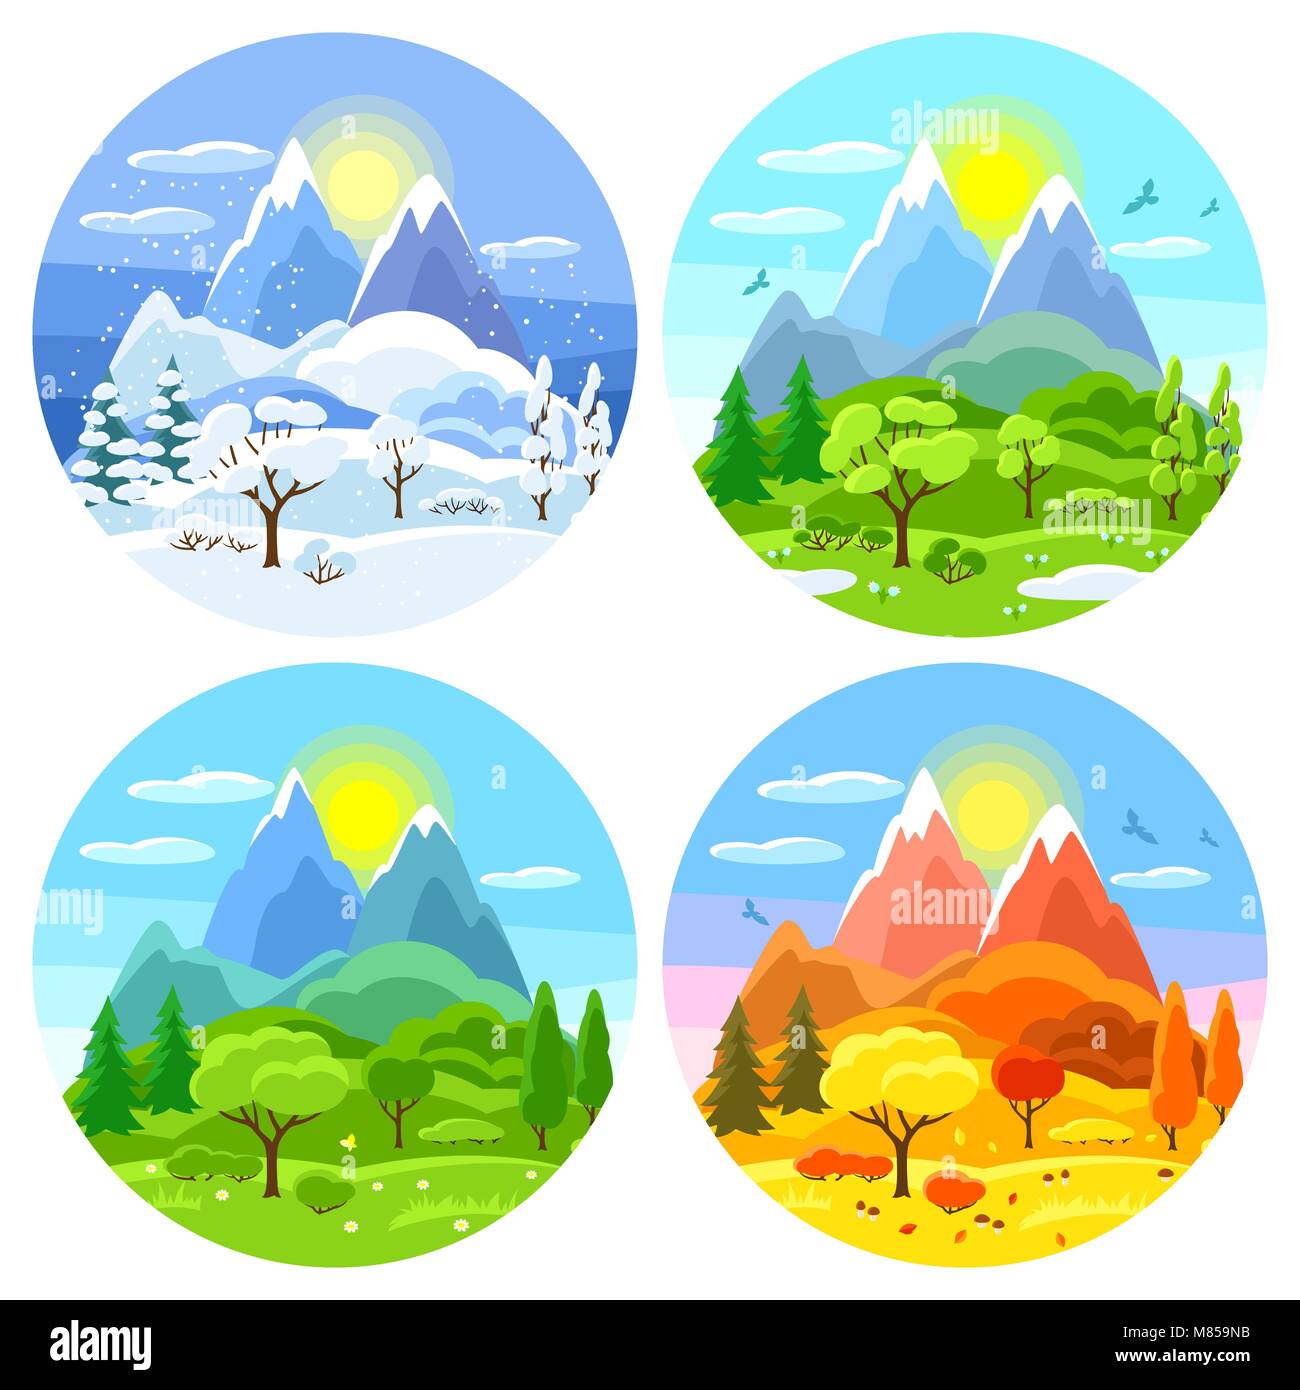 Vier Jahreszeiten Landschaft. Abbildungen mit Bäumen, Bergen und Hügeln im Winter, Frühling, Sommer, Herbst. Stock Vektor